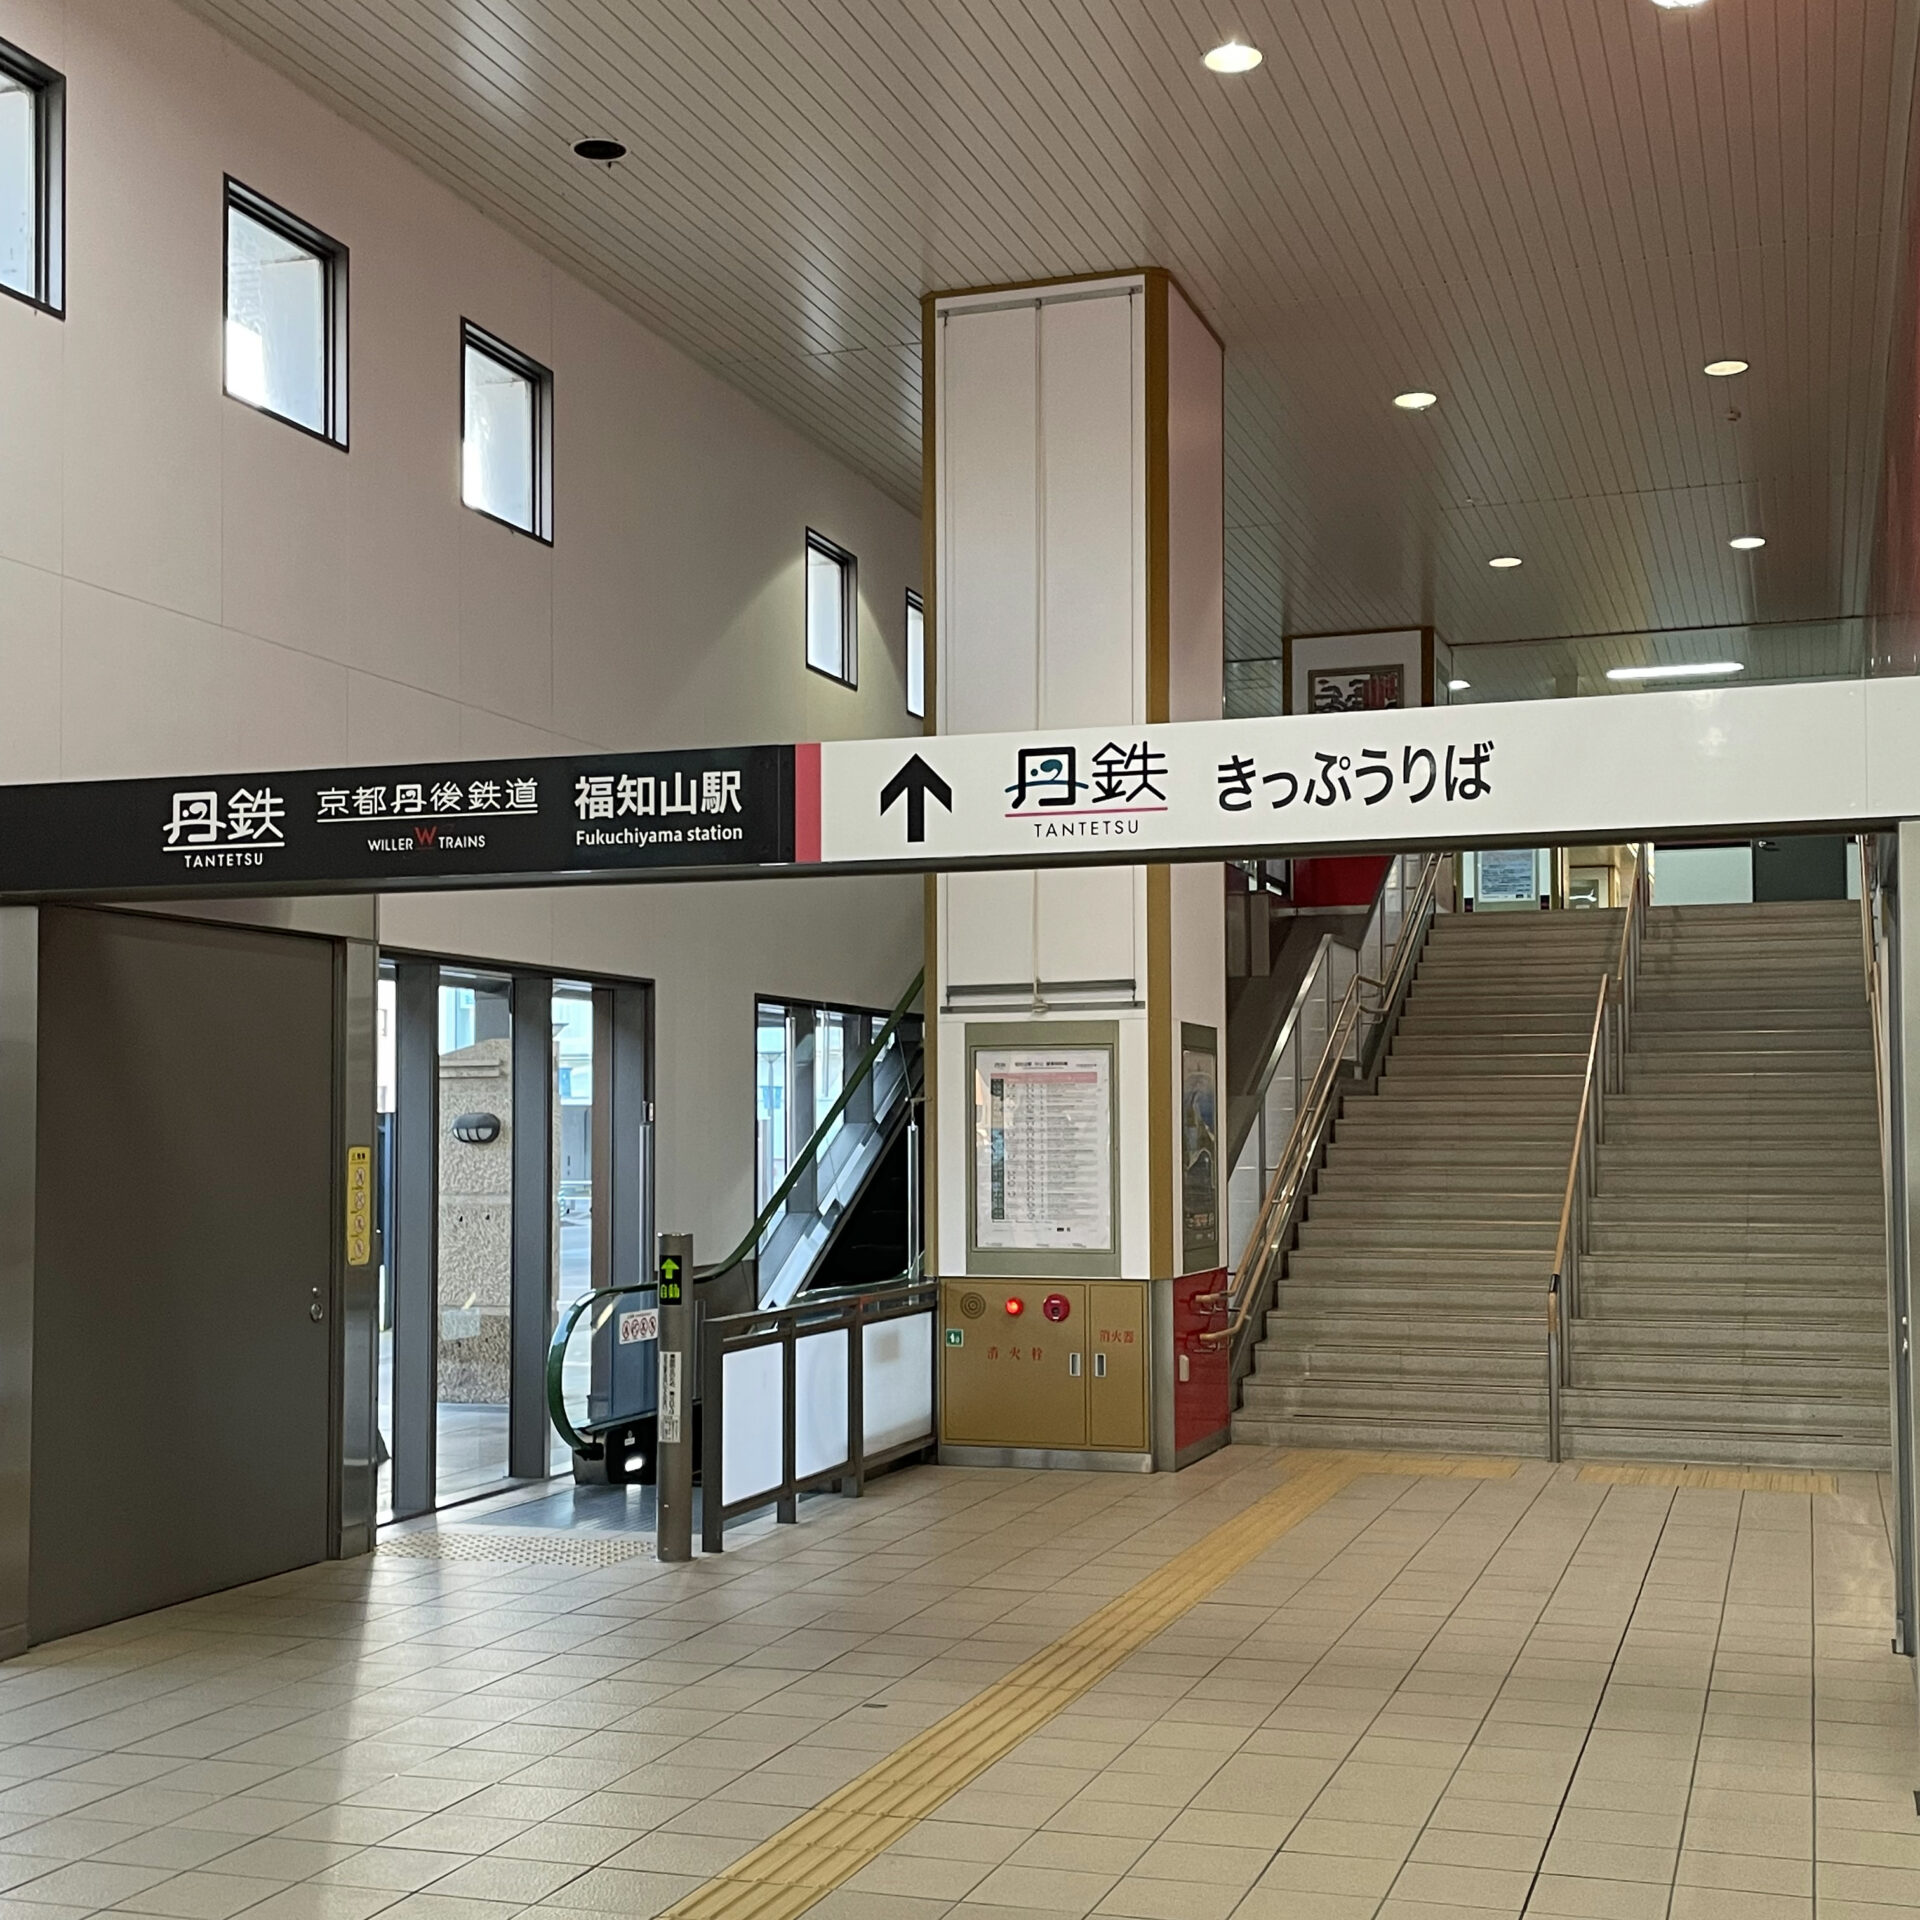 京都丹後鉄道福知山駅コンコース